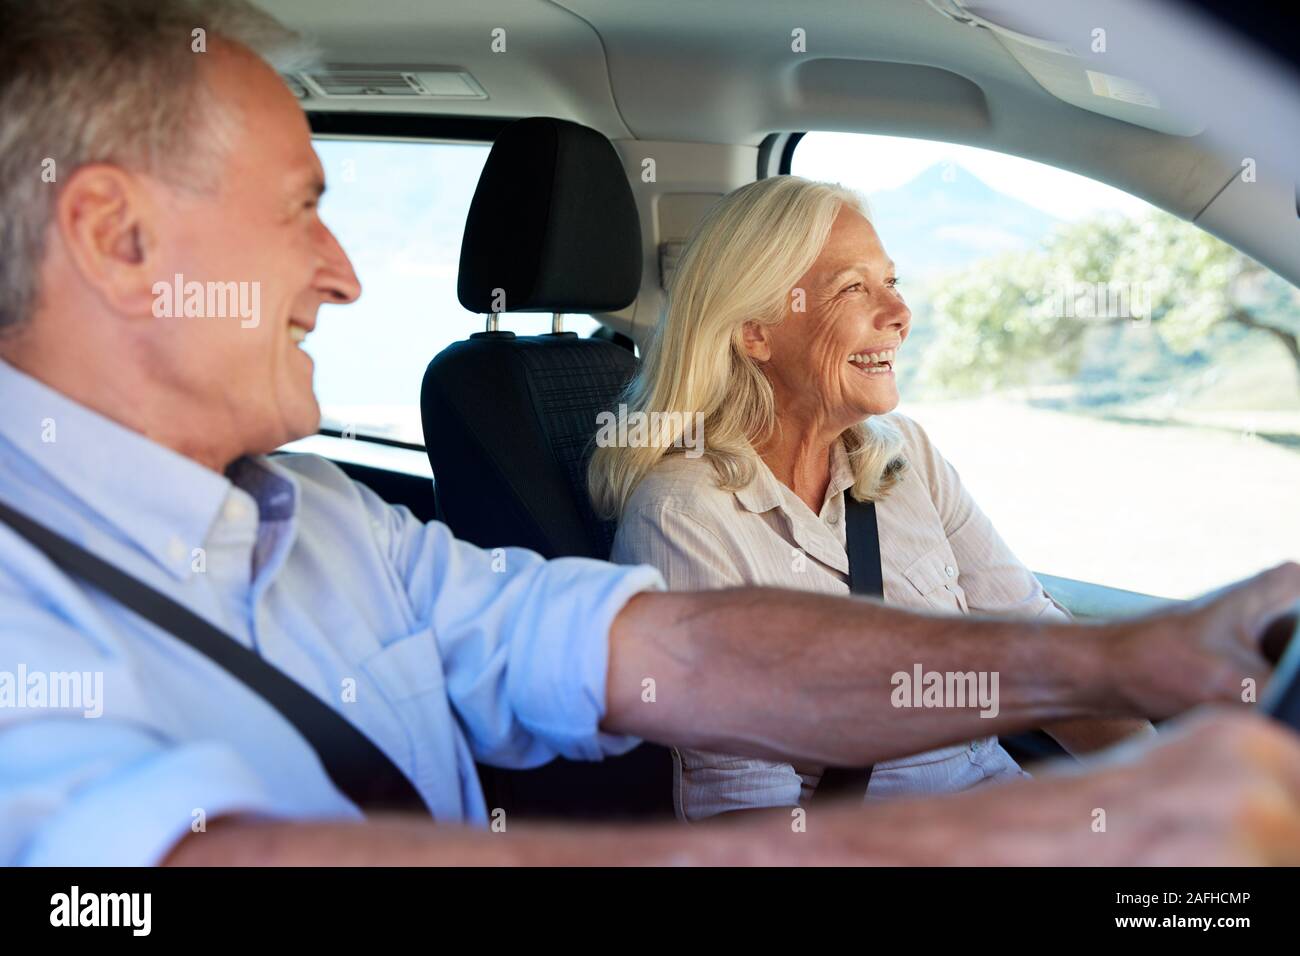 Happy senior couple blanc roulant dans leur voiture, smiling, portrait, Close up Banque D'Images